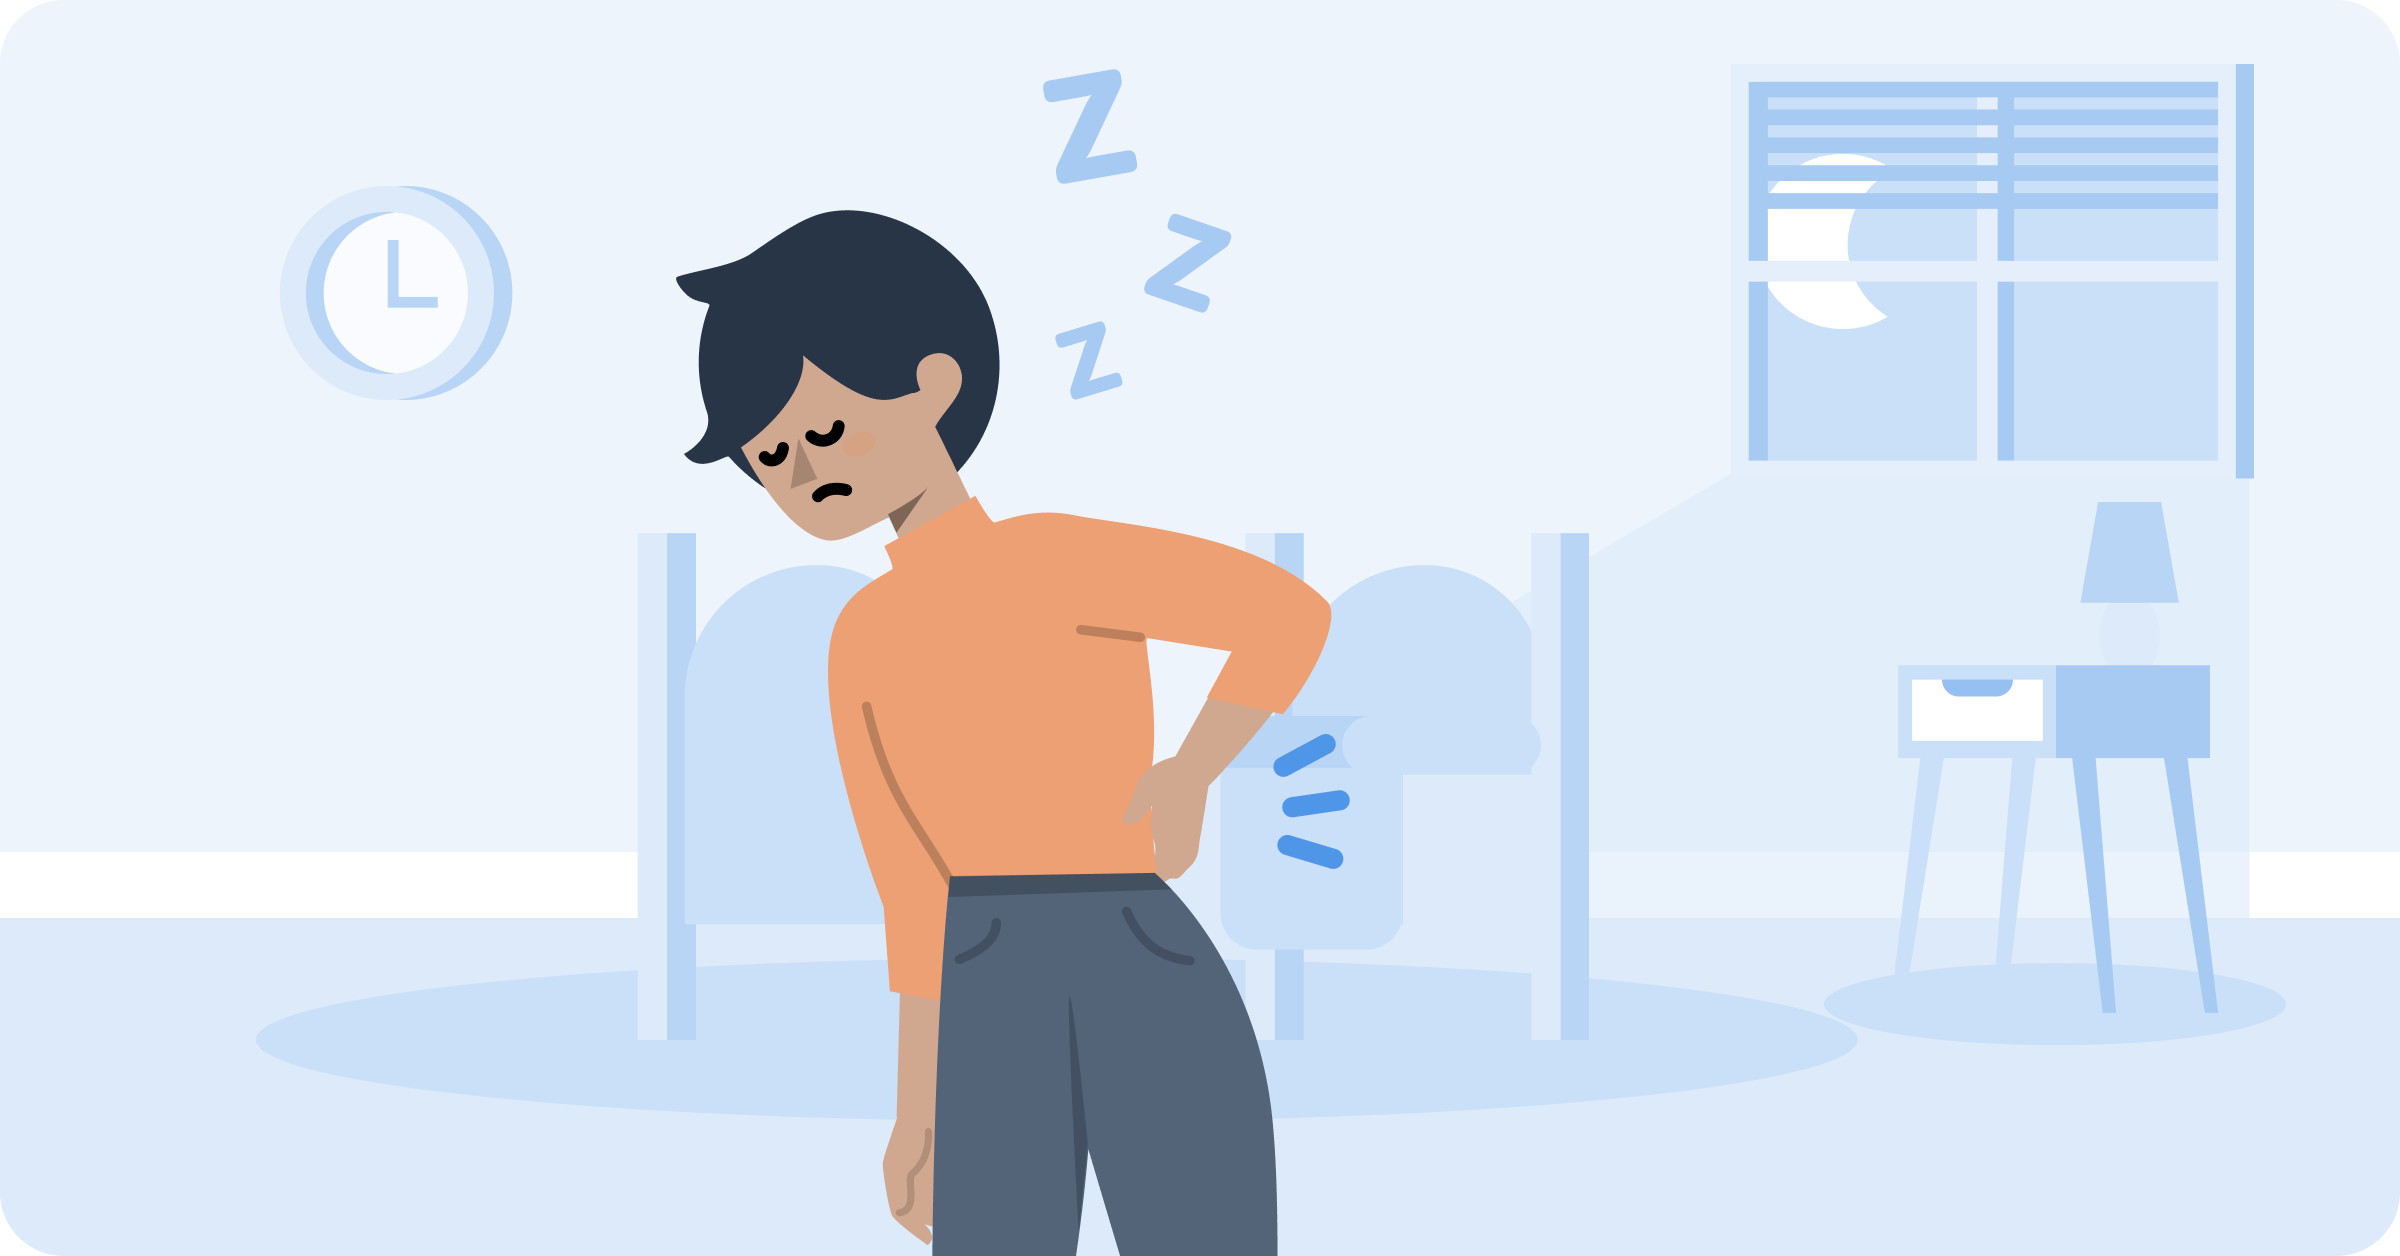 Gör ryggsmärtan det svårt att somna? Få praktiska tips om sovställningar och vanor som kan göra det enklare och mer smärtfritt att sova.